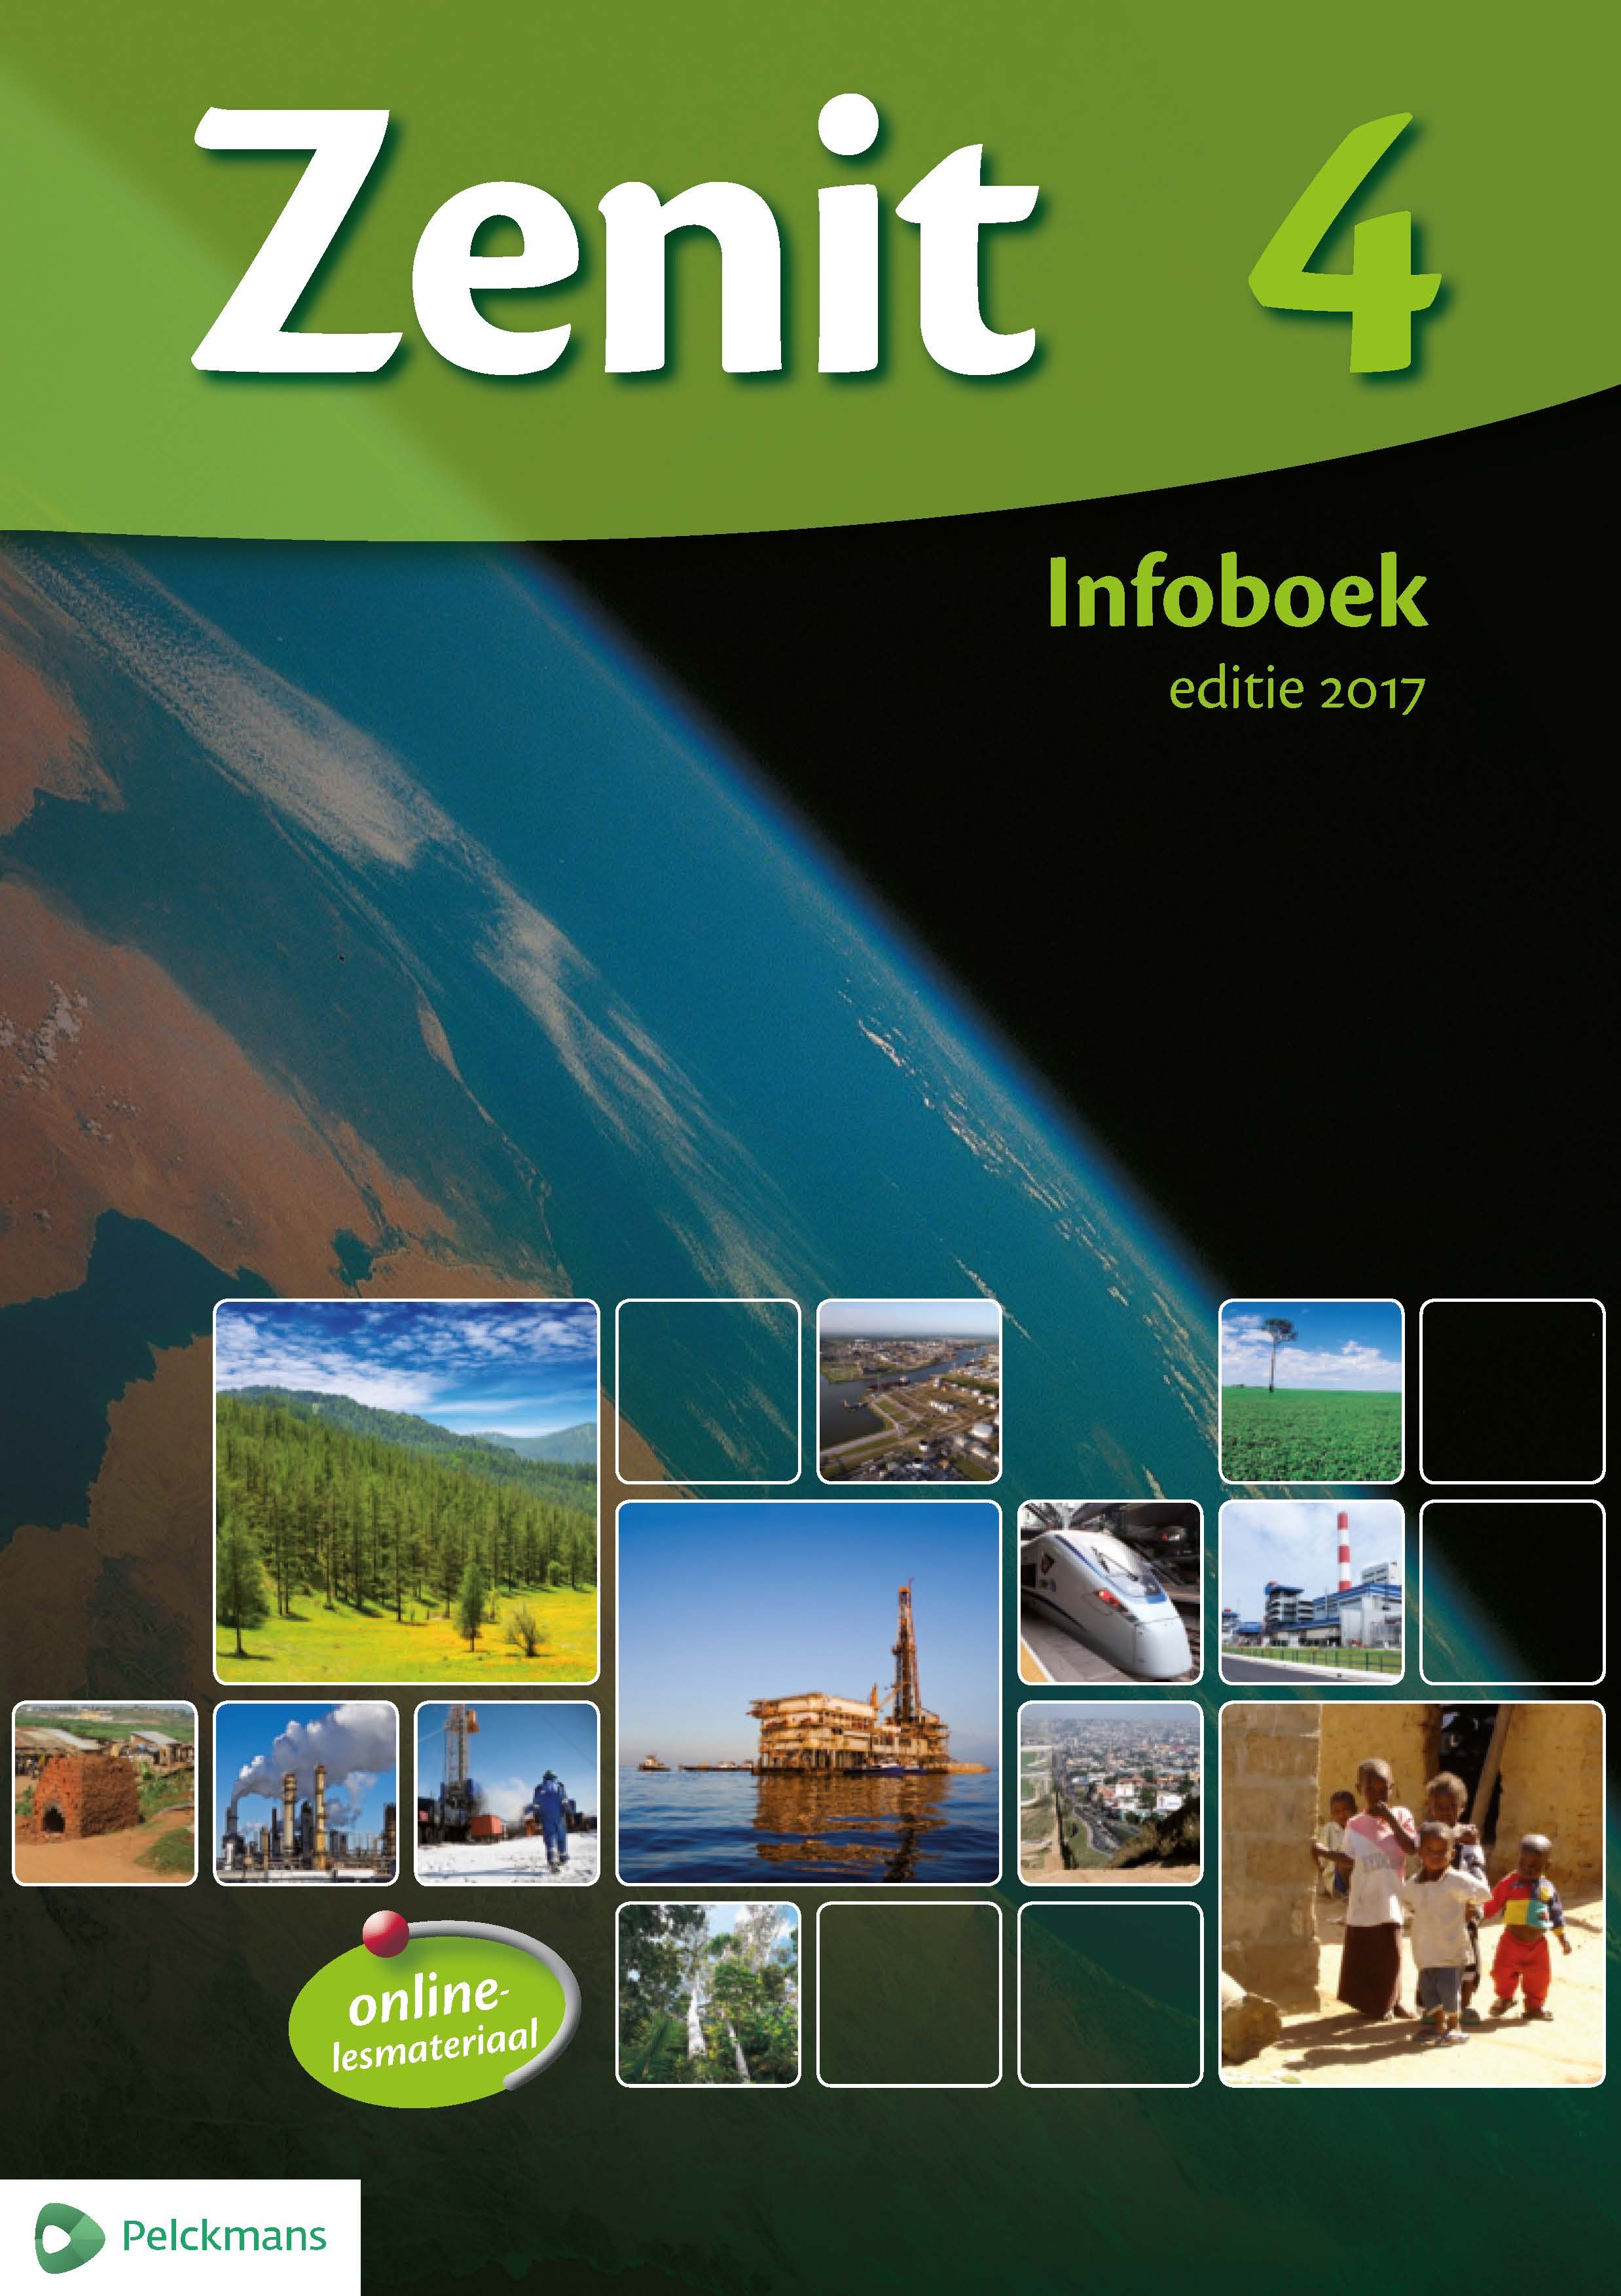 Zenit 4 infoboek aso editie 2017